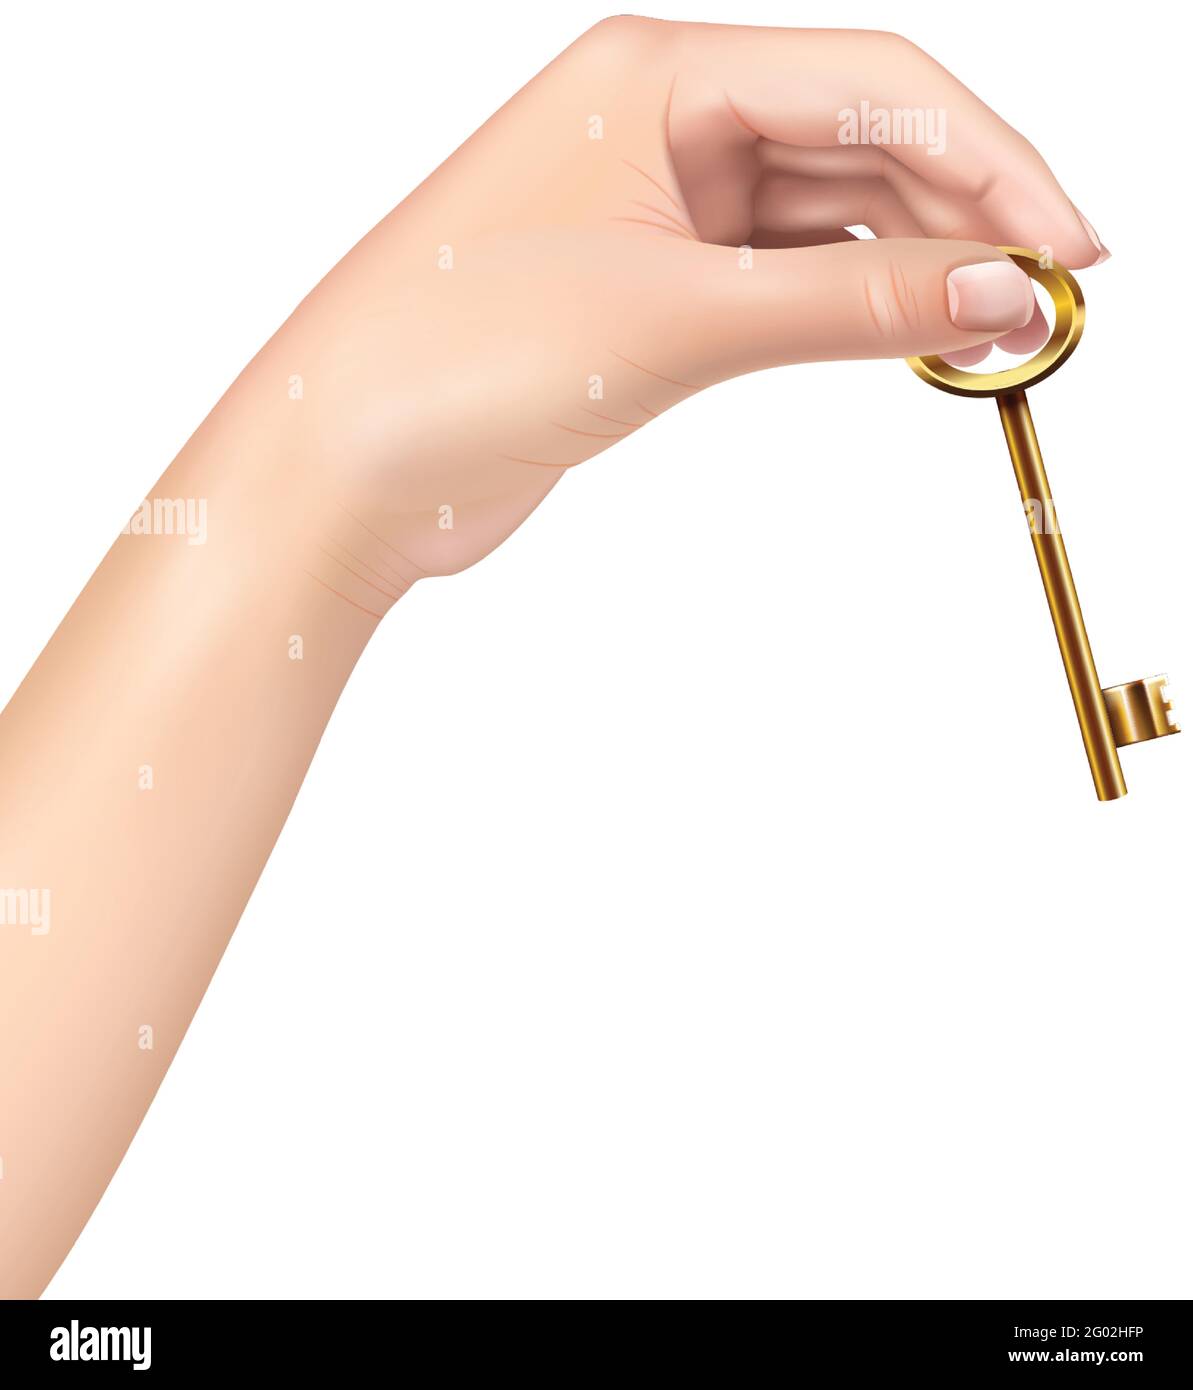 Illustration vectorielle isolée sur fond blanc, main réaliste d'une femme tenant une clé dorée. Illustration de Vecteur